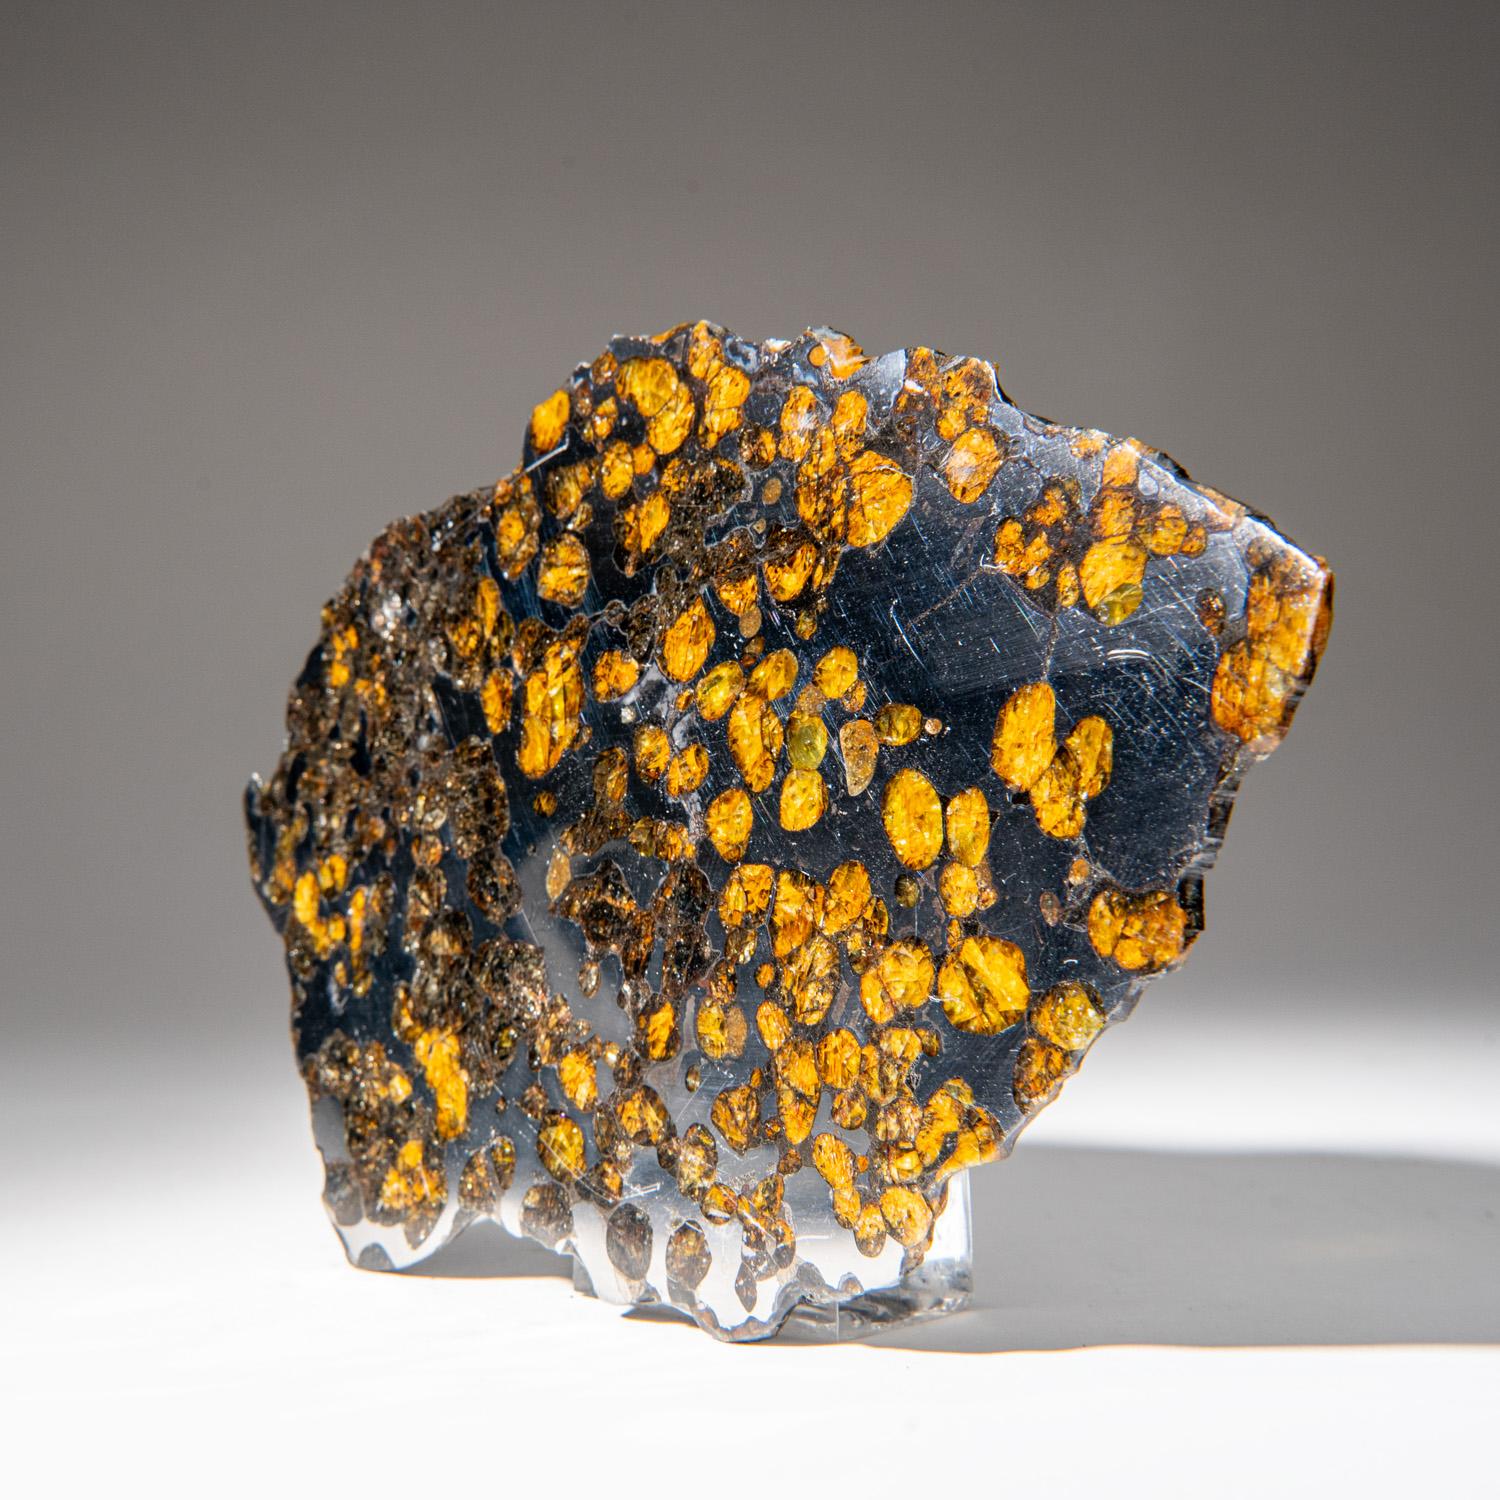 Brenham est une météorite pallasite trouvée près de Haviland, une petite ville du comté de Kiowa, au Kansas, aux États-Unis. Les pallasites sont un type de météorite pierre-fer qui, lorsqu'elles sont coupées et polies, présentent des cristaux